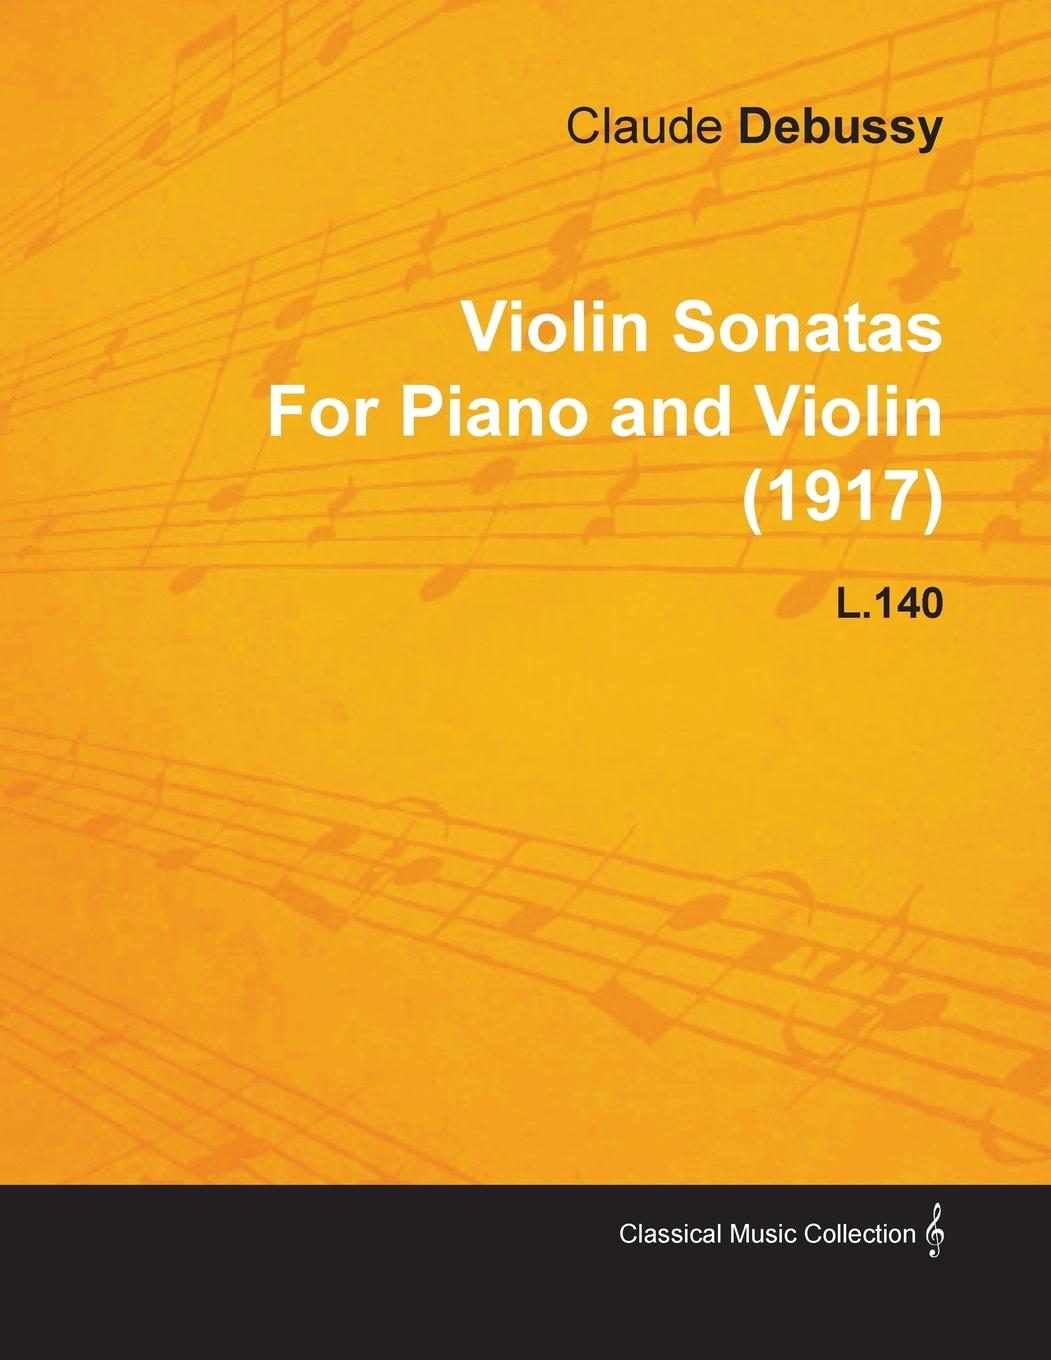 Violin Sonatas by Claude Debussy for Piano and Violin (1917) L.140 - Debussy, Claude